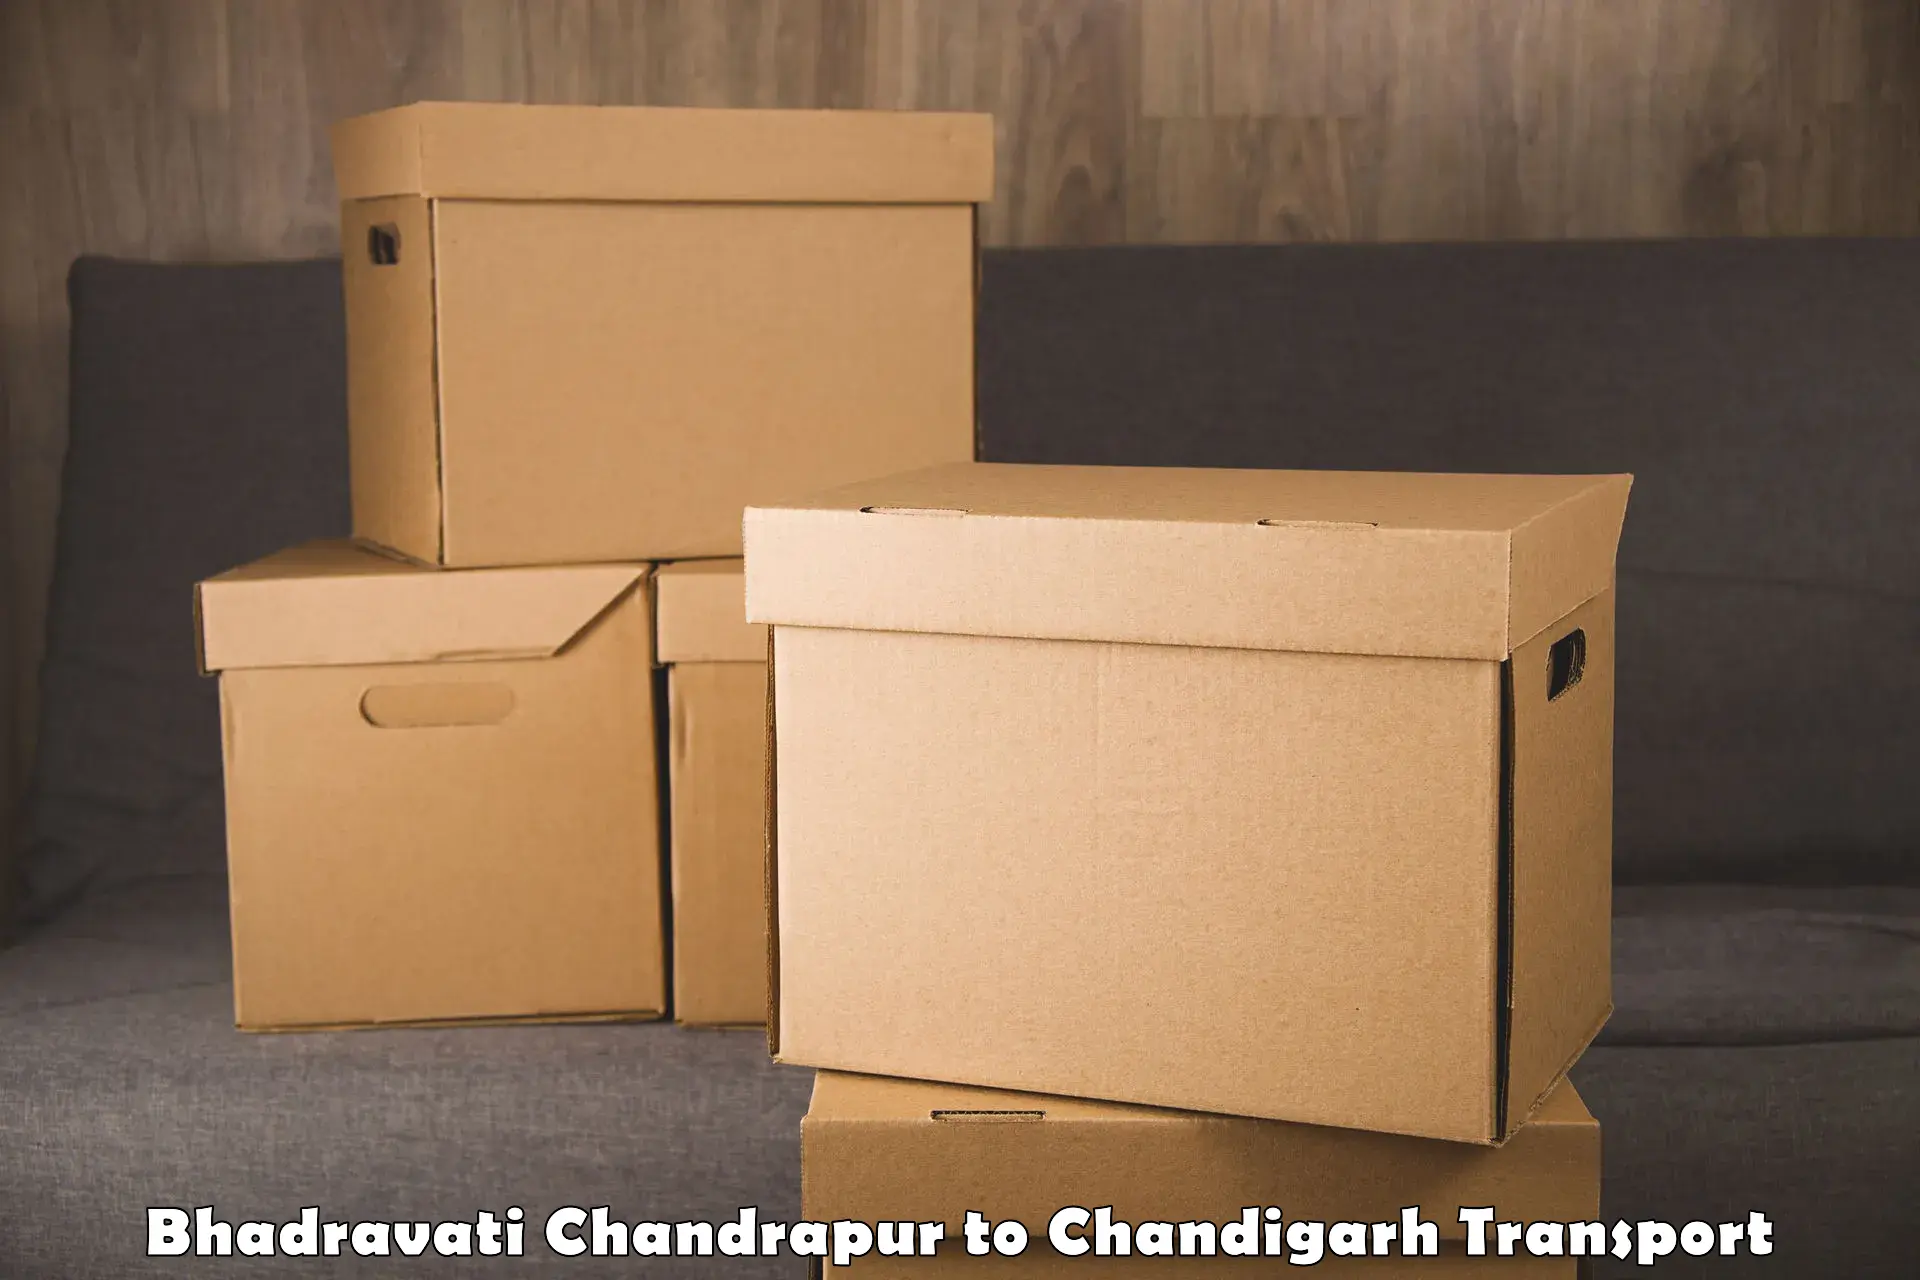 Daily transport service Bhadravati Chandrapur to Chandigarh